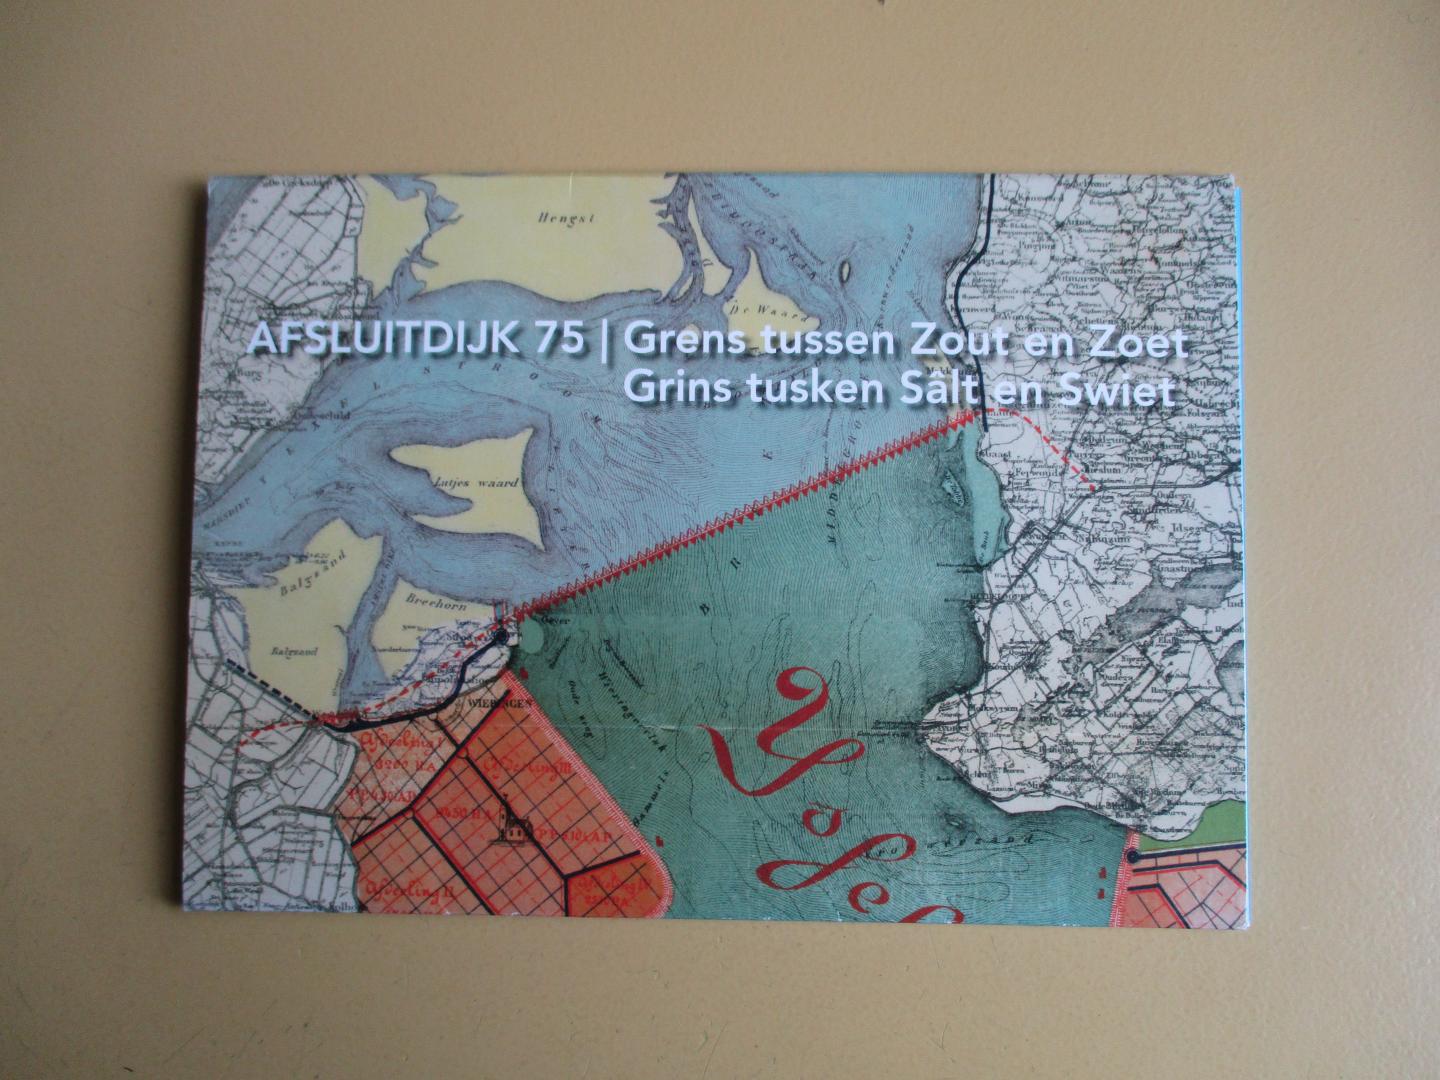 Aten, D./ J. Hagen / W. Messchaert - afsluitdijk 75 / grens tussen Zout en Zoet  / Grins tusken Sâlt en Swiet